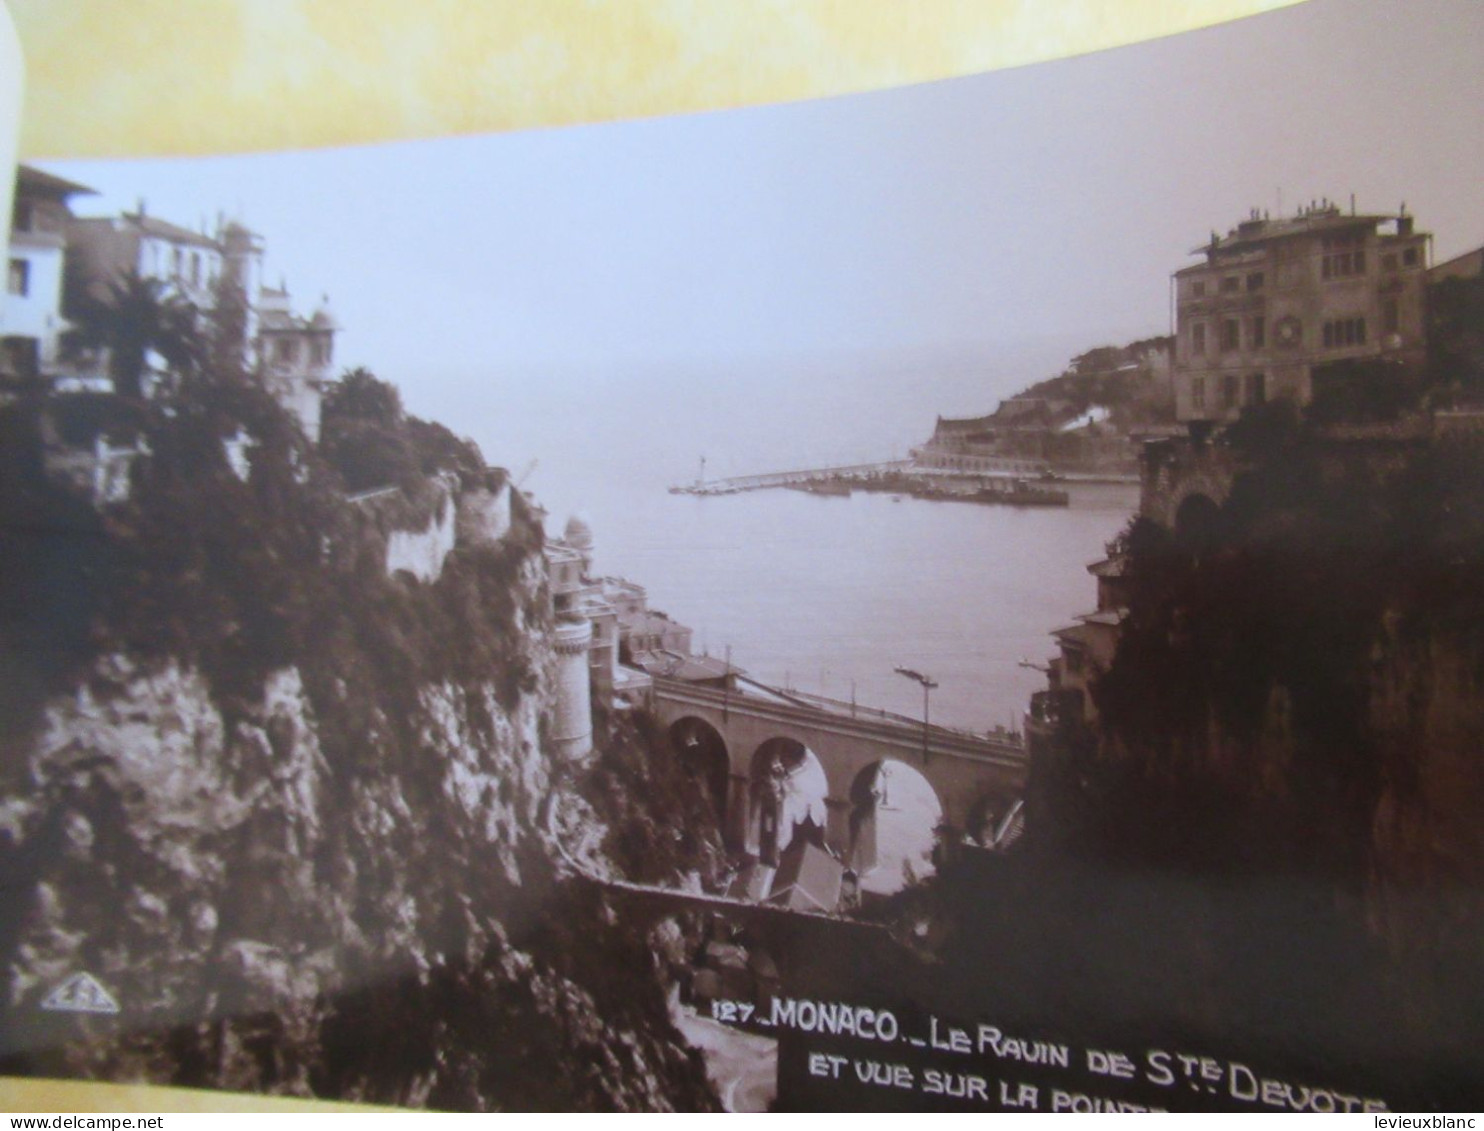 20 Cartes Postales détachables/"MONACO-MONTE CARLO"/real Photos/vers 1920-1930    CPDIV397